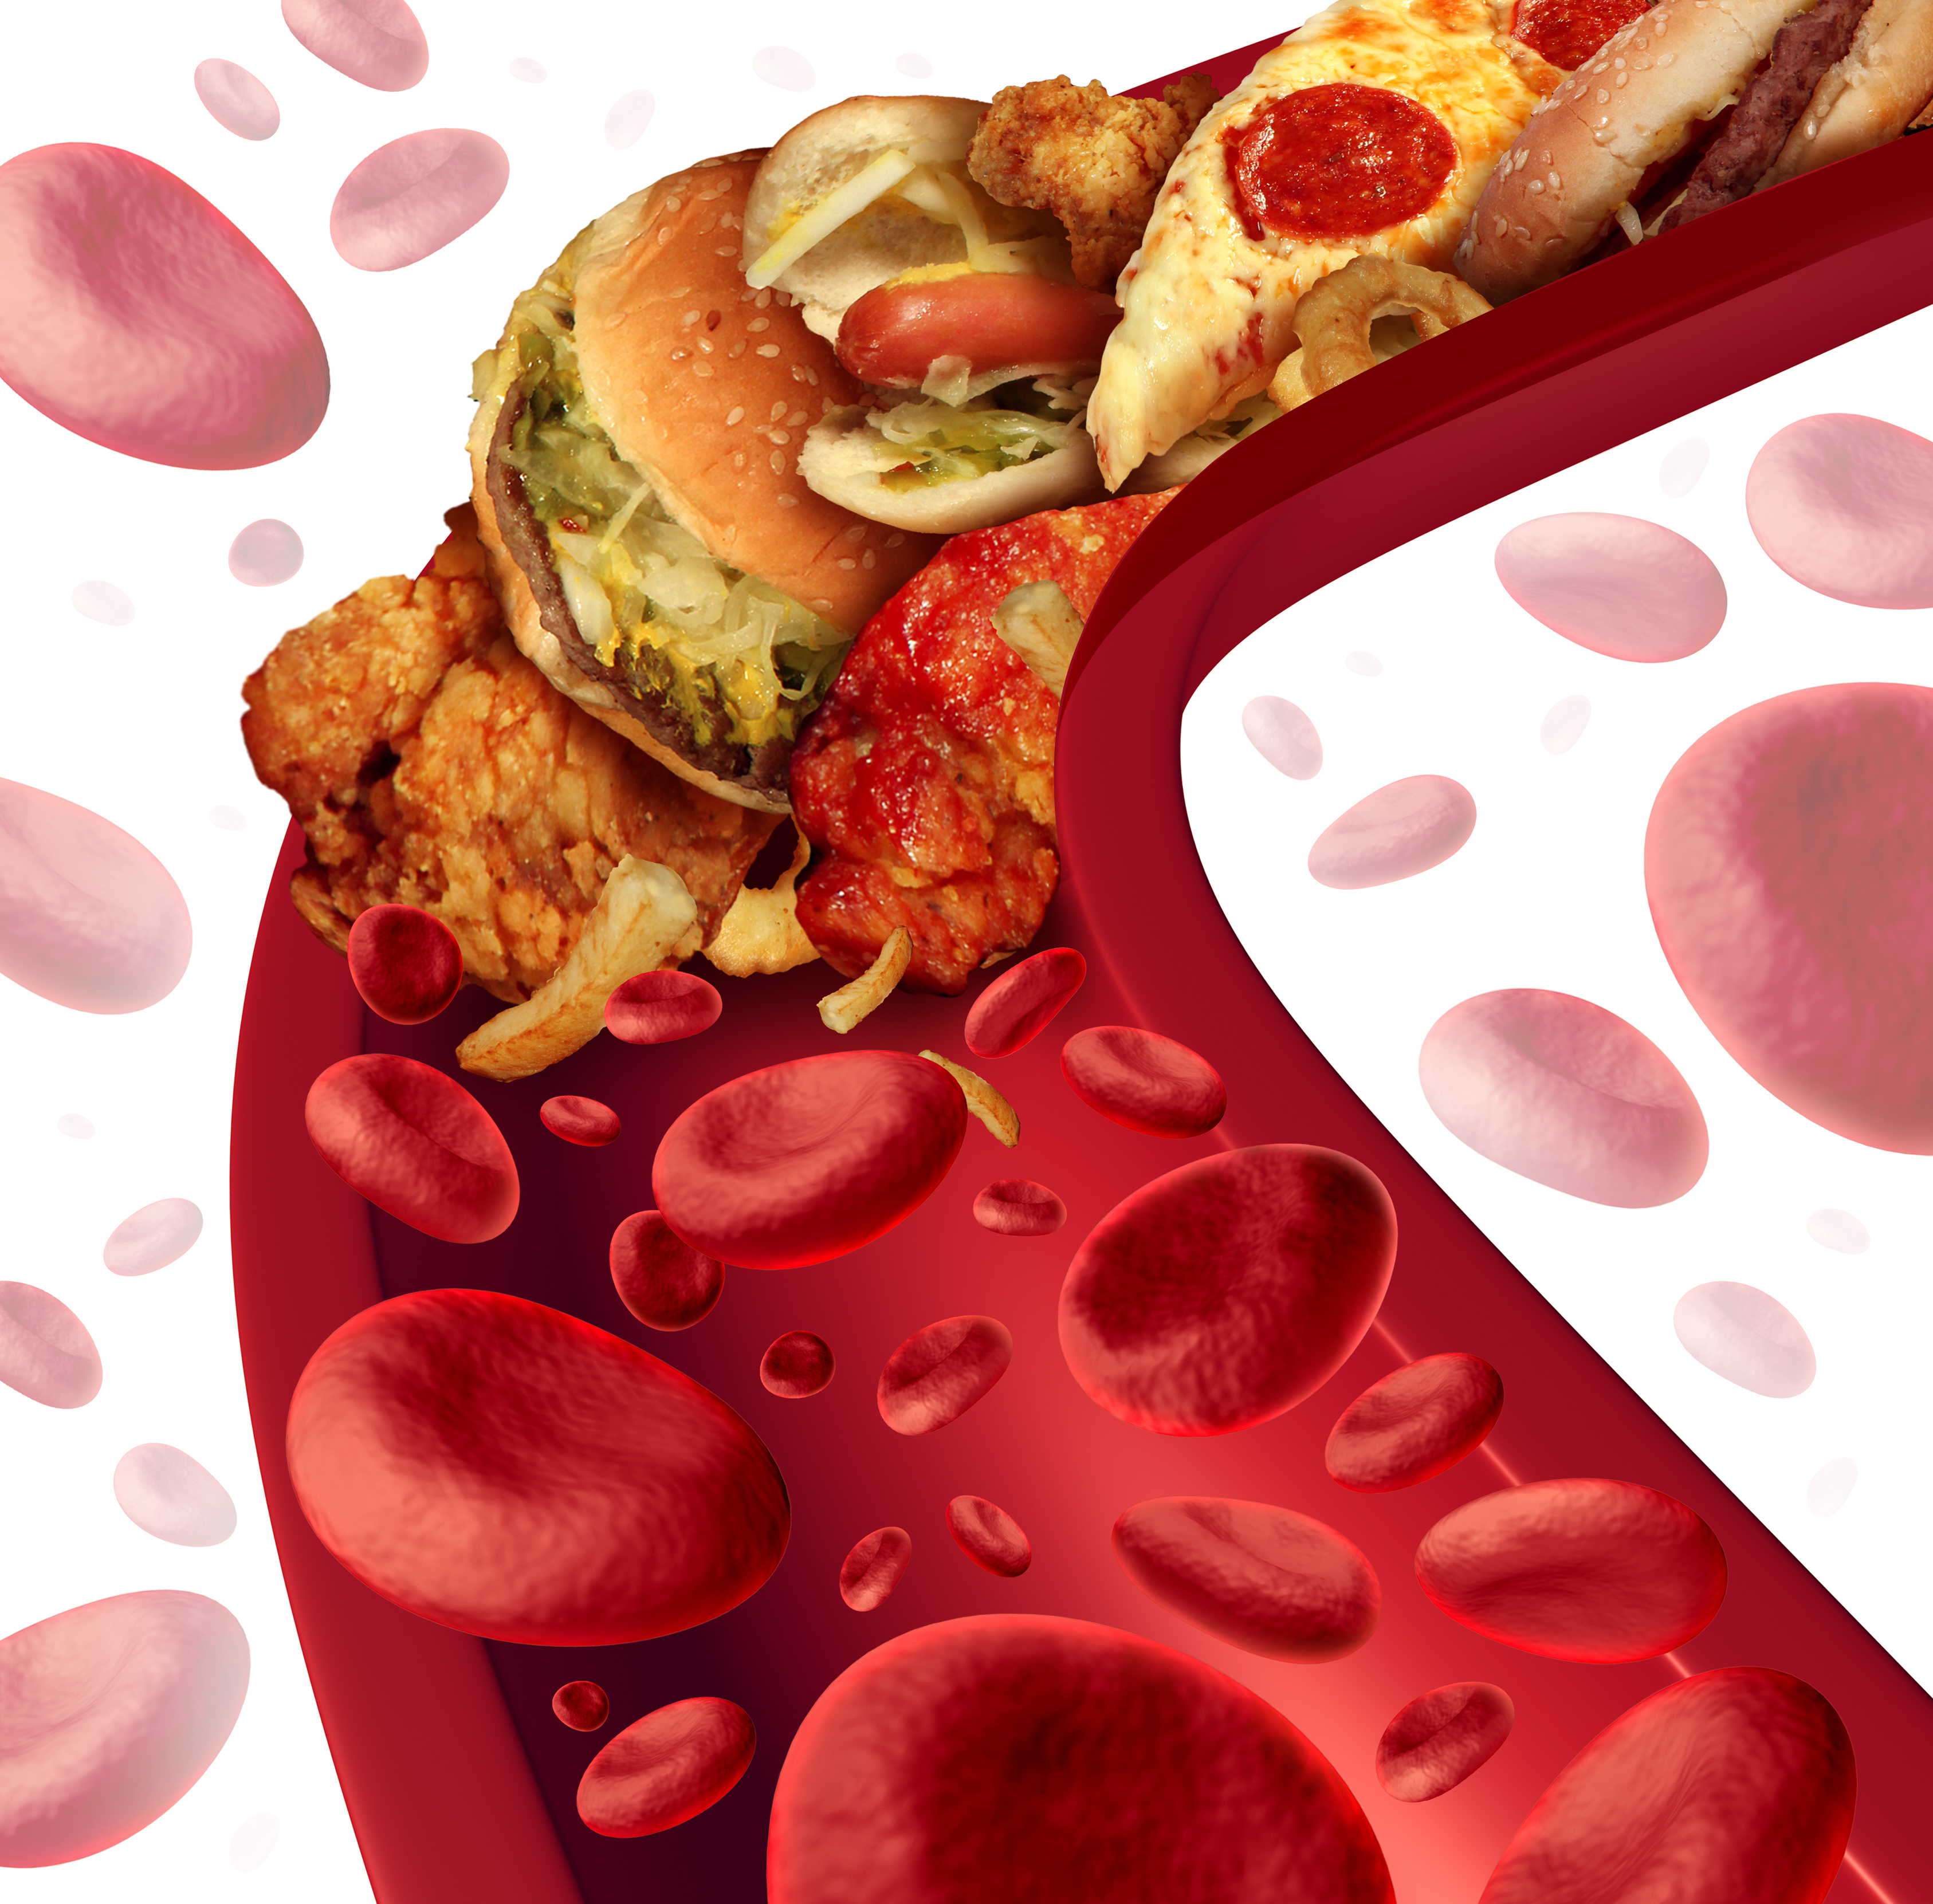 Imagen figurada de una arteria llena de comida basura